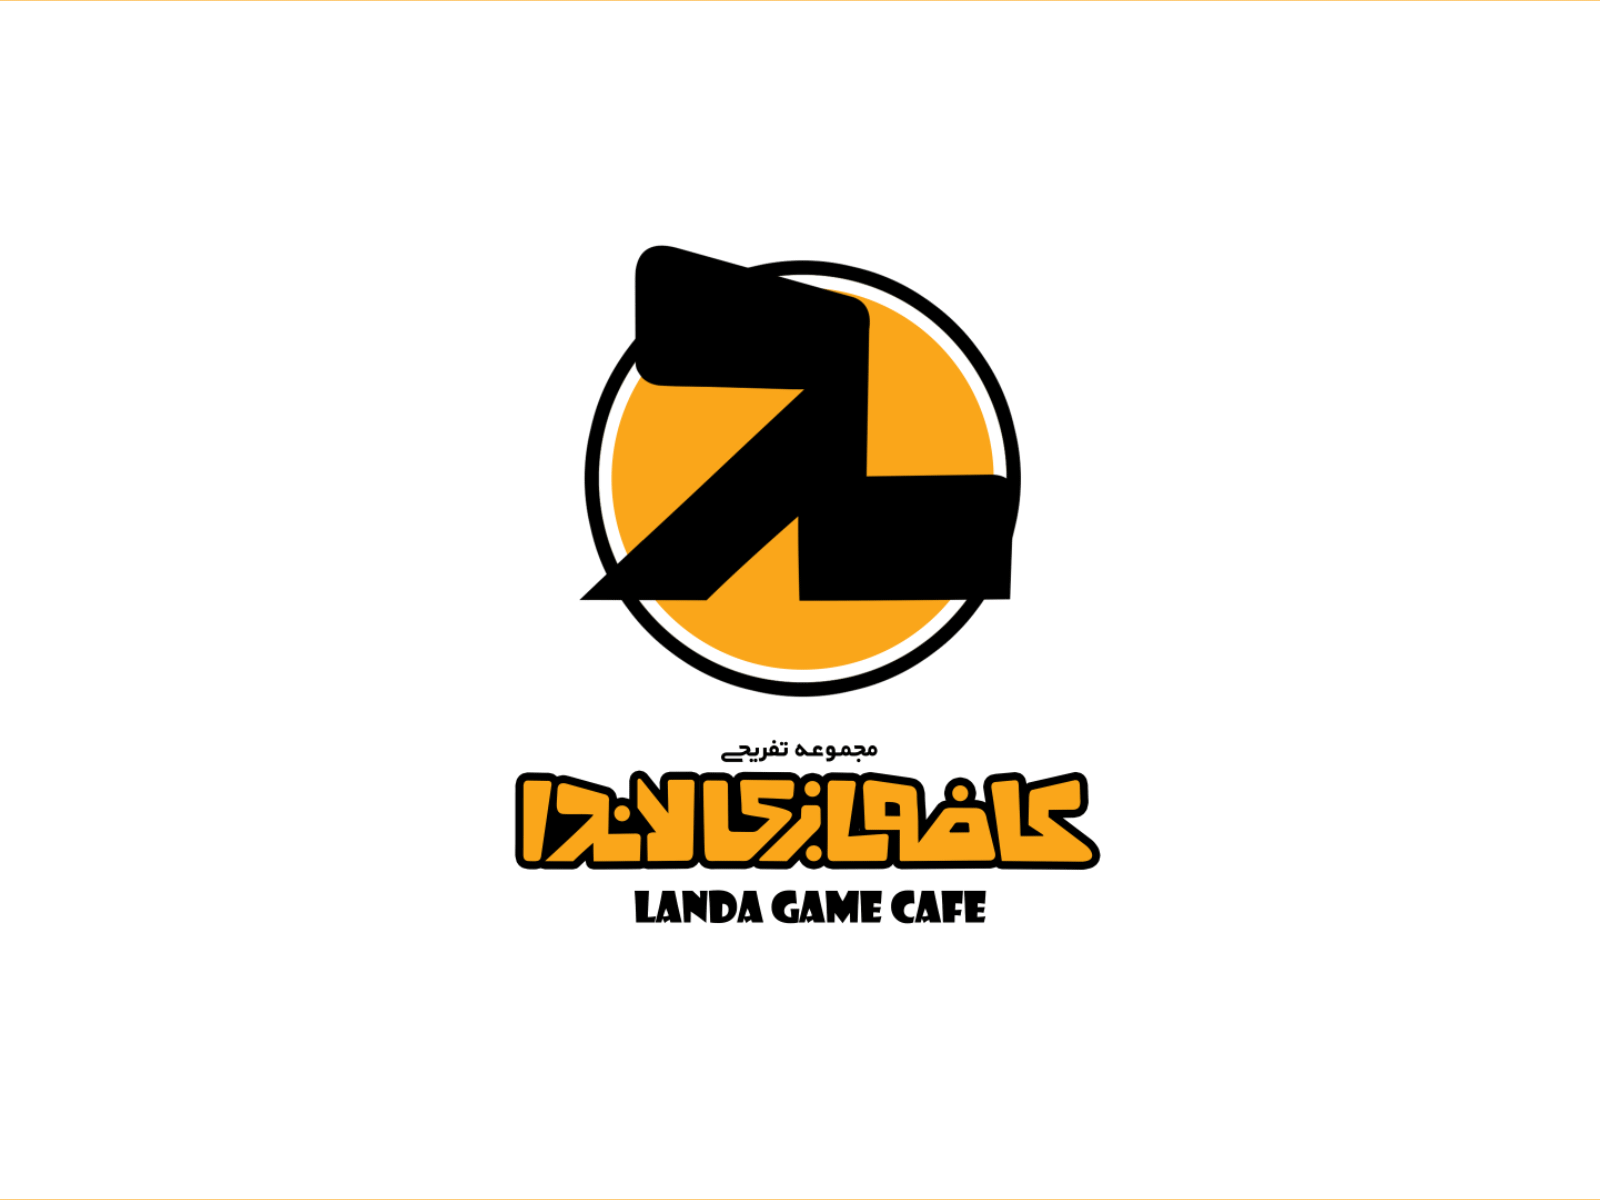 "landa cafe" logo motion